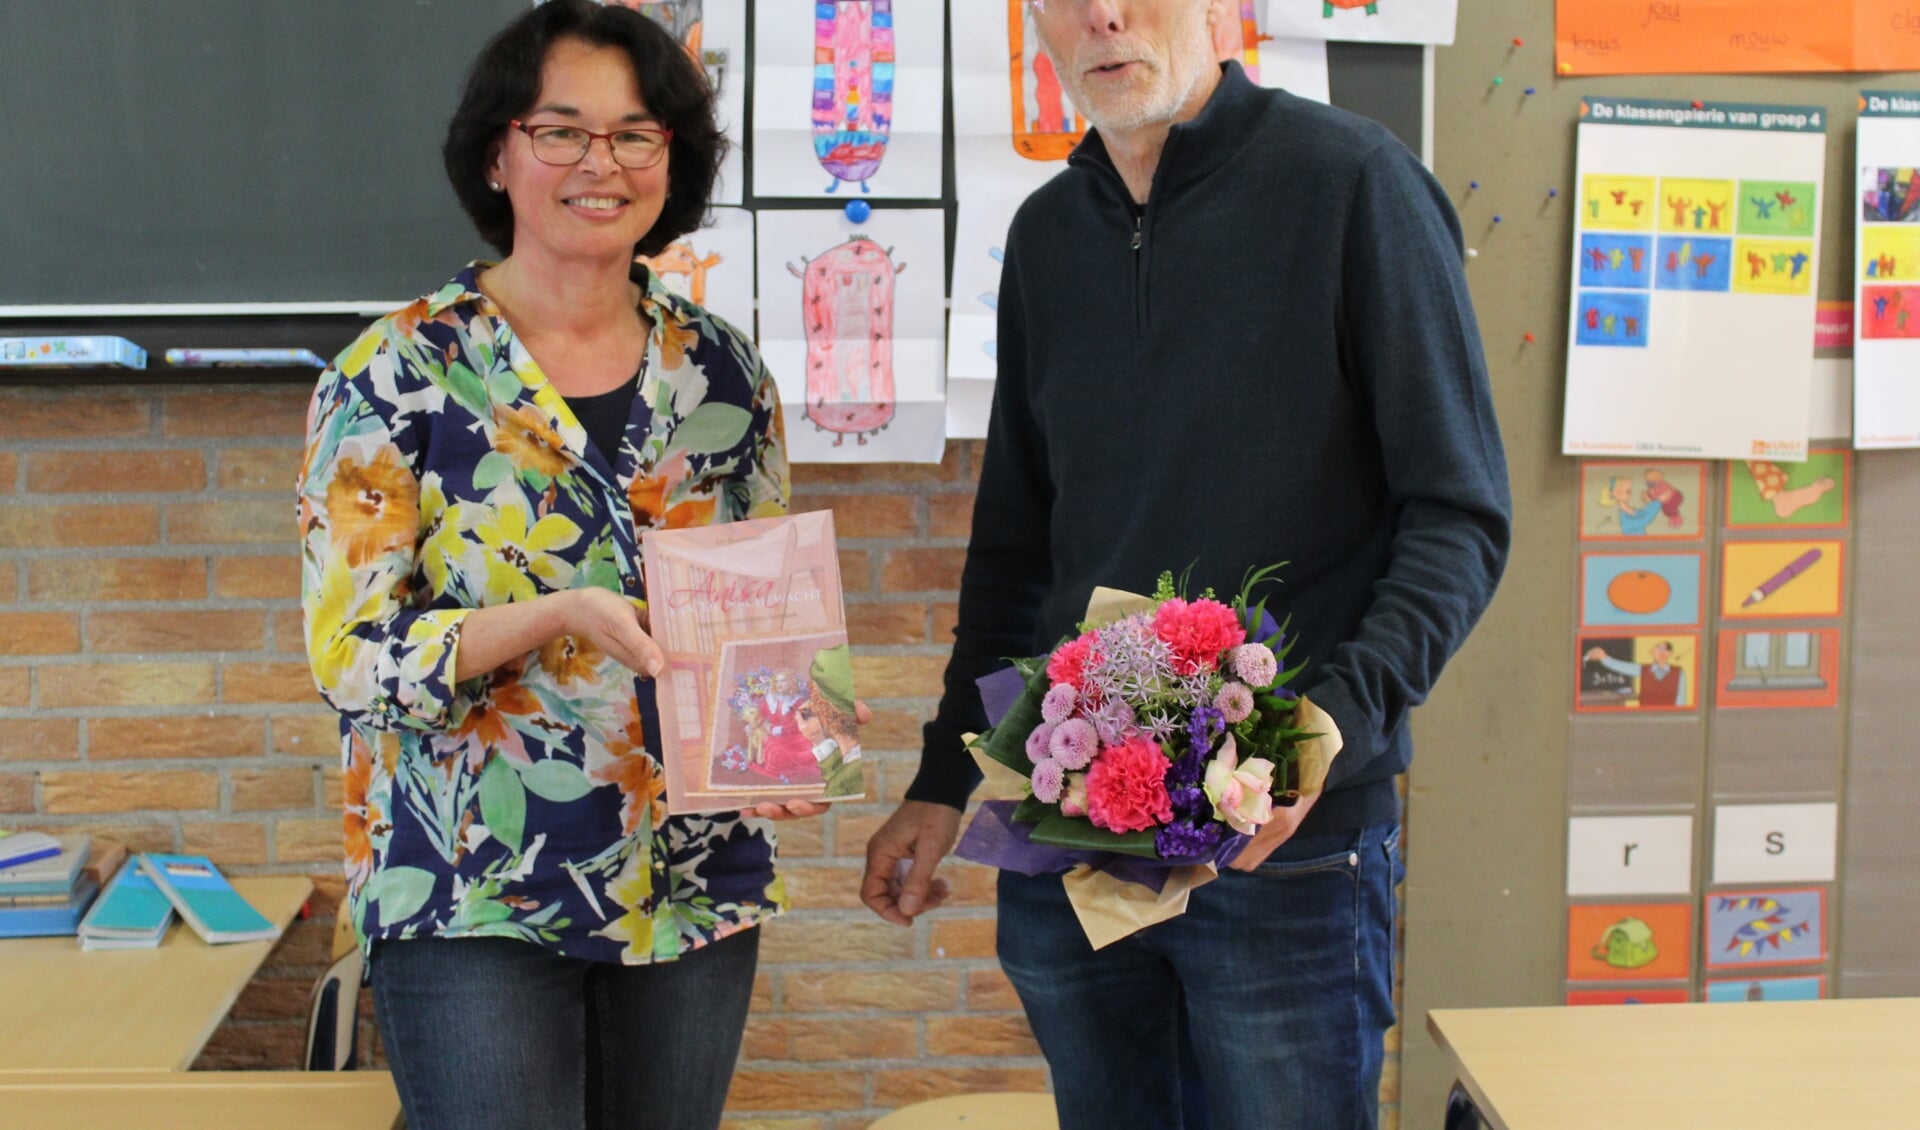 Elly Doornbosch overhandigt het boek aan directeur Cor Both en hij geeft bloemen aan Elly.